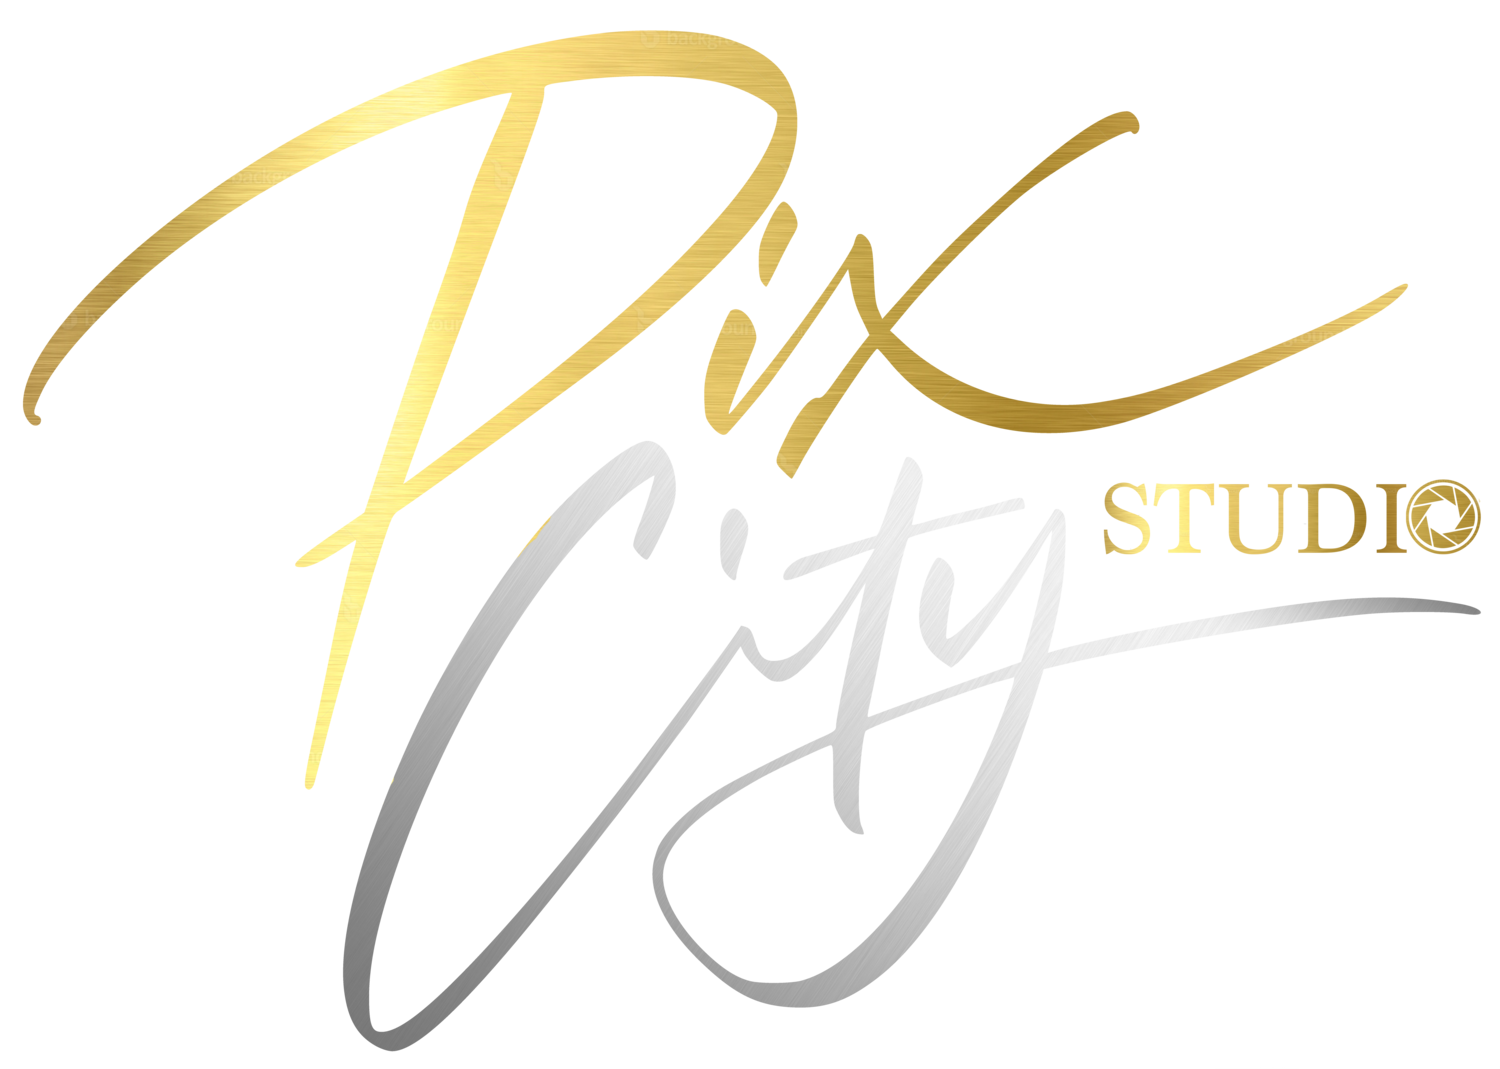 Pix City Studio